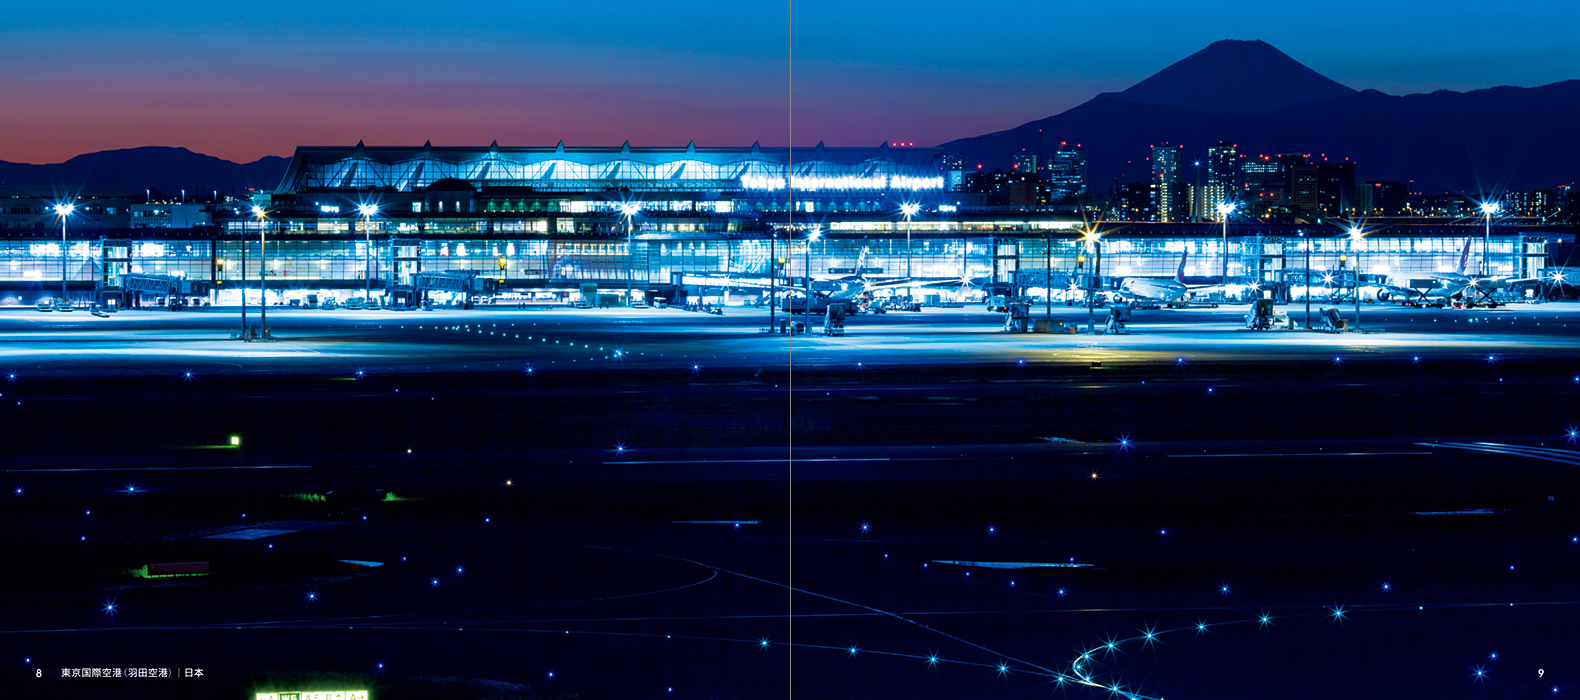 夕暮れや夜の時間帯の 空港夜景 に特化した写真集 Night Flight 夜の空港 が刊行 Spice エンタメ特化型情報メディア スパイス